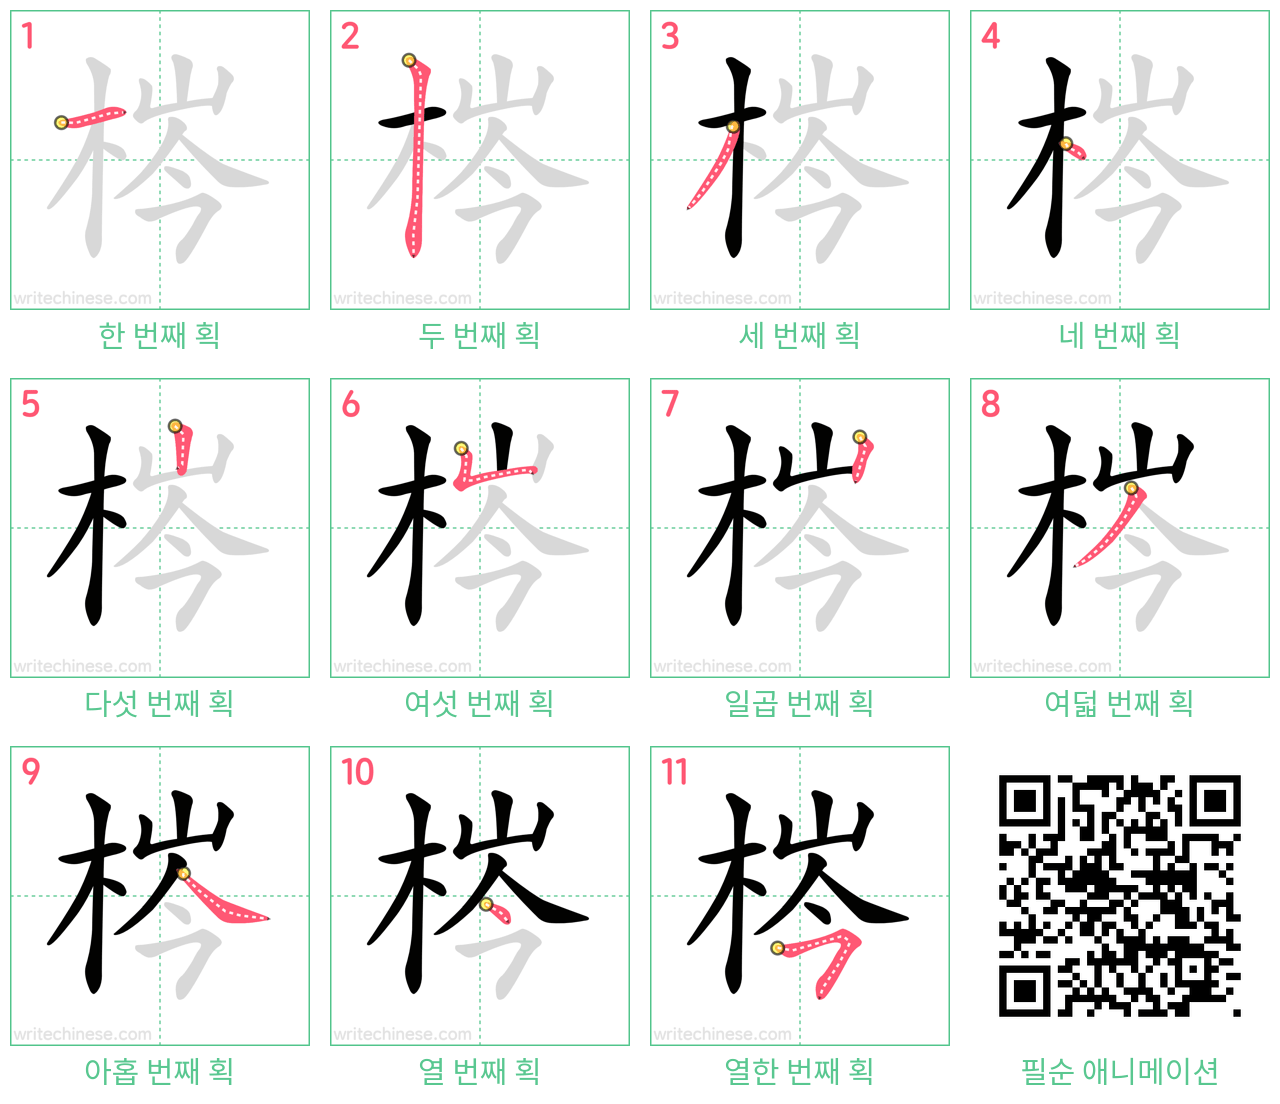 梣 step-by-step stroke order diagrams